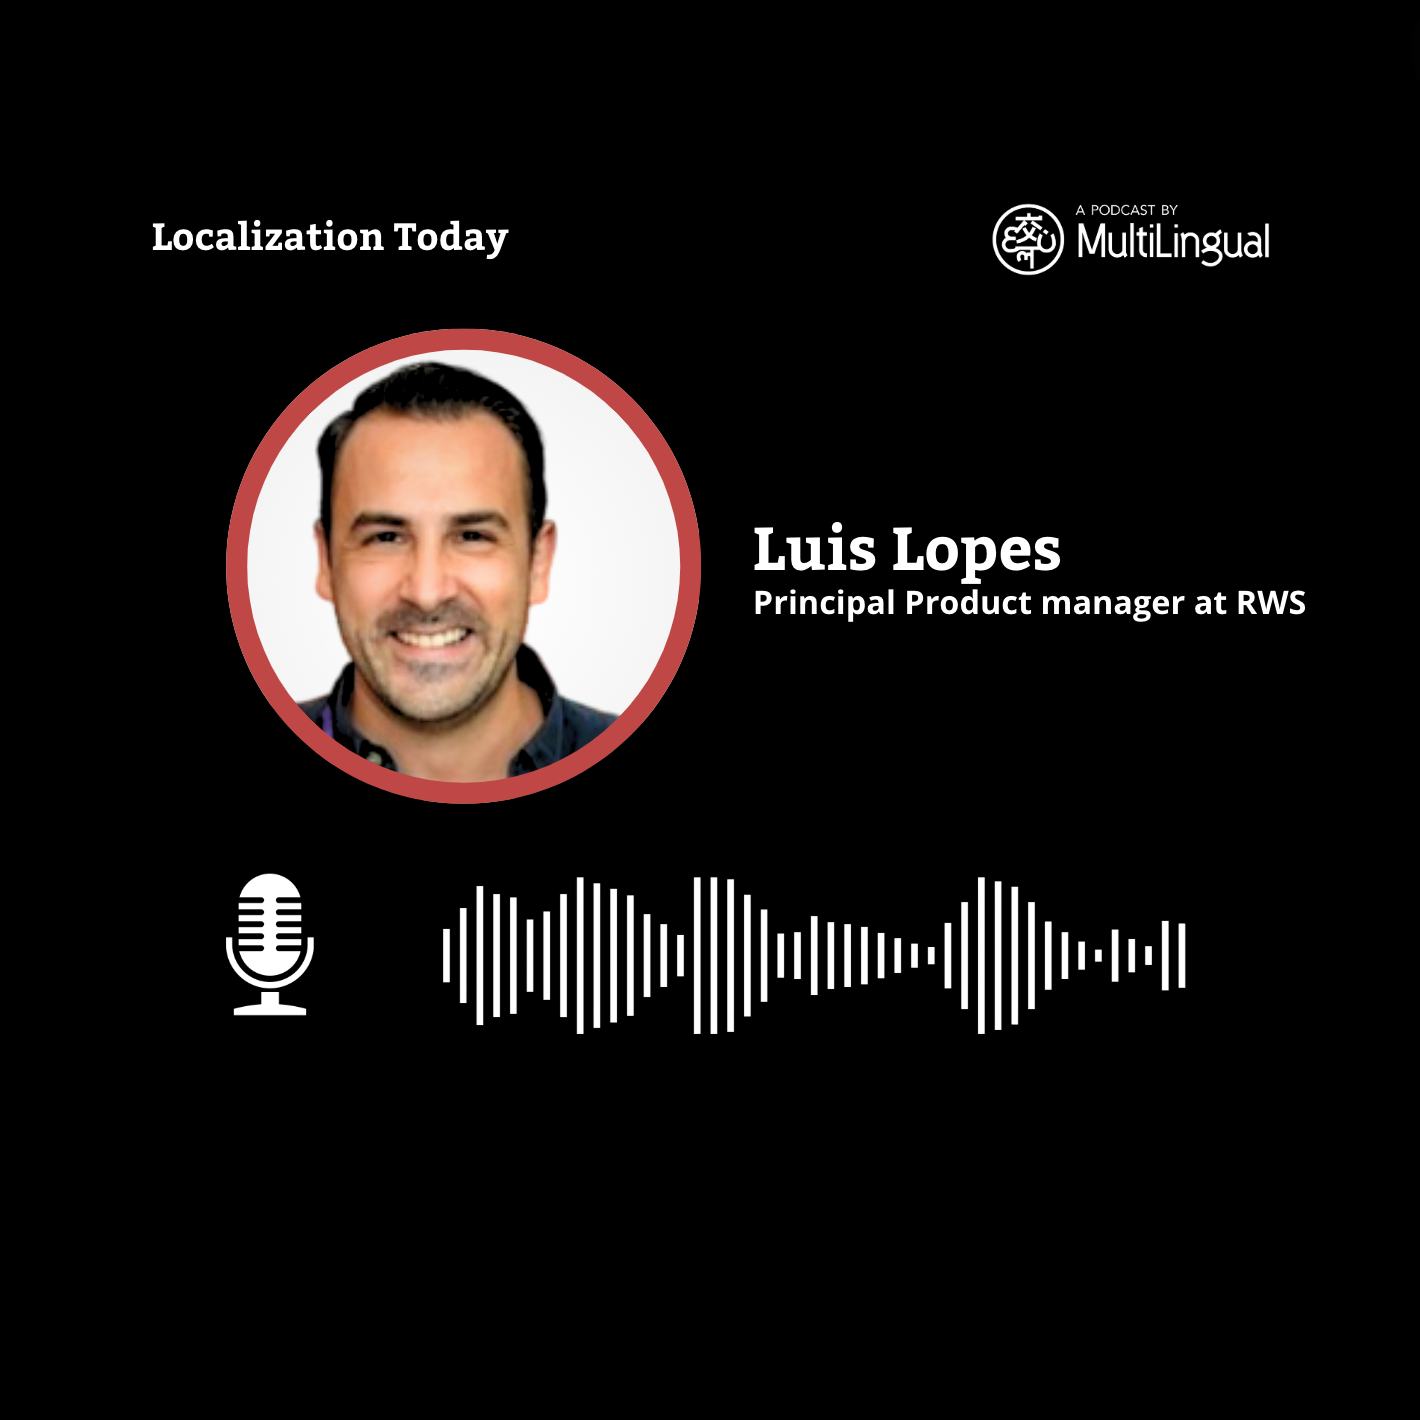 LocWorld51: Luis Lopes, Principal Product manager at RWS